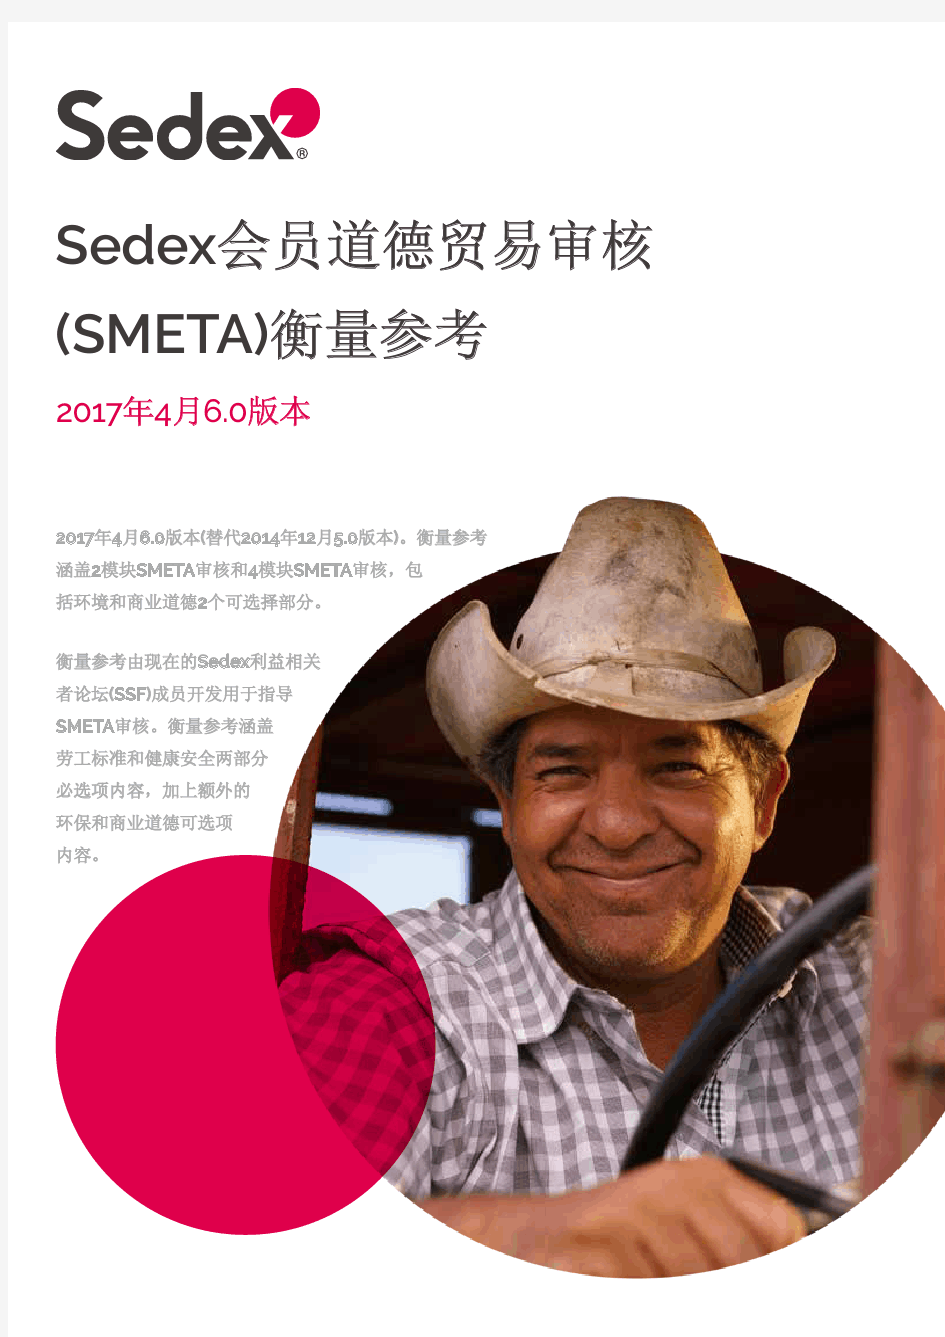 SMETA 6.0 Measurement Criteria Mandarin 19Jun17 Sedex衡量参考201704